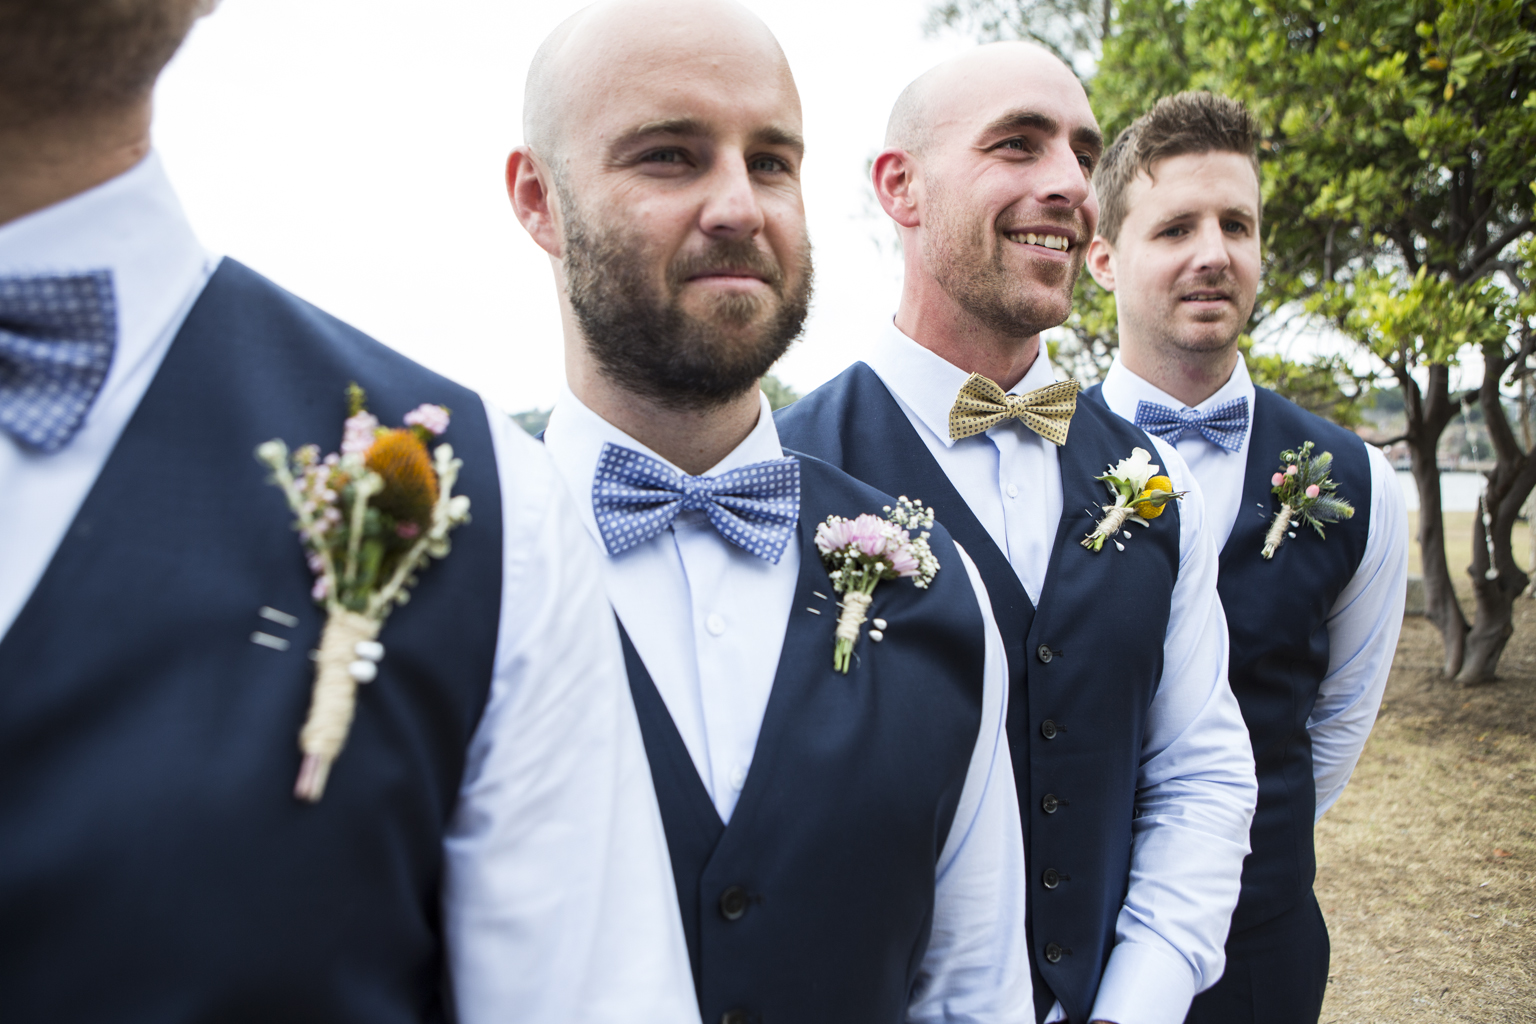 Groomsmen and their bespoke bow ties